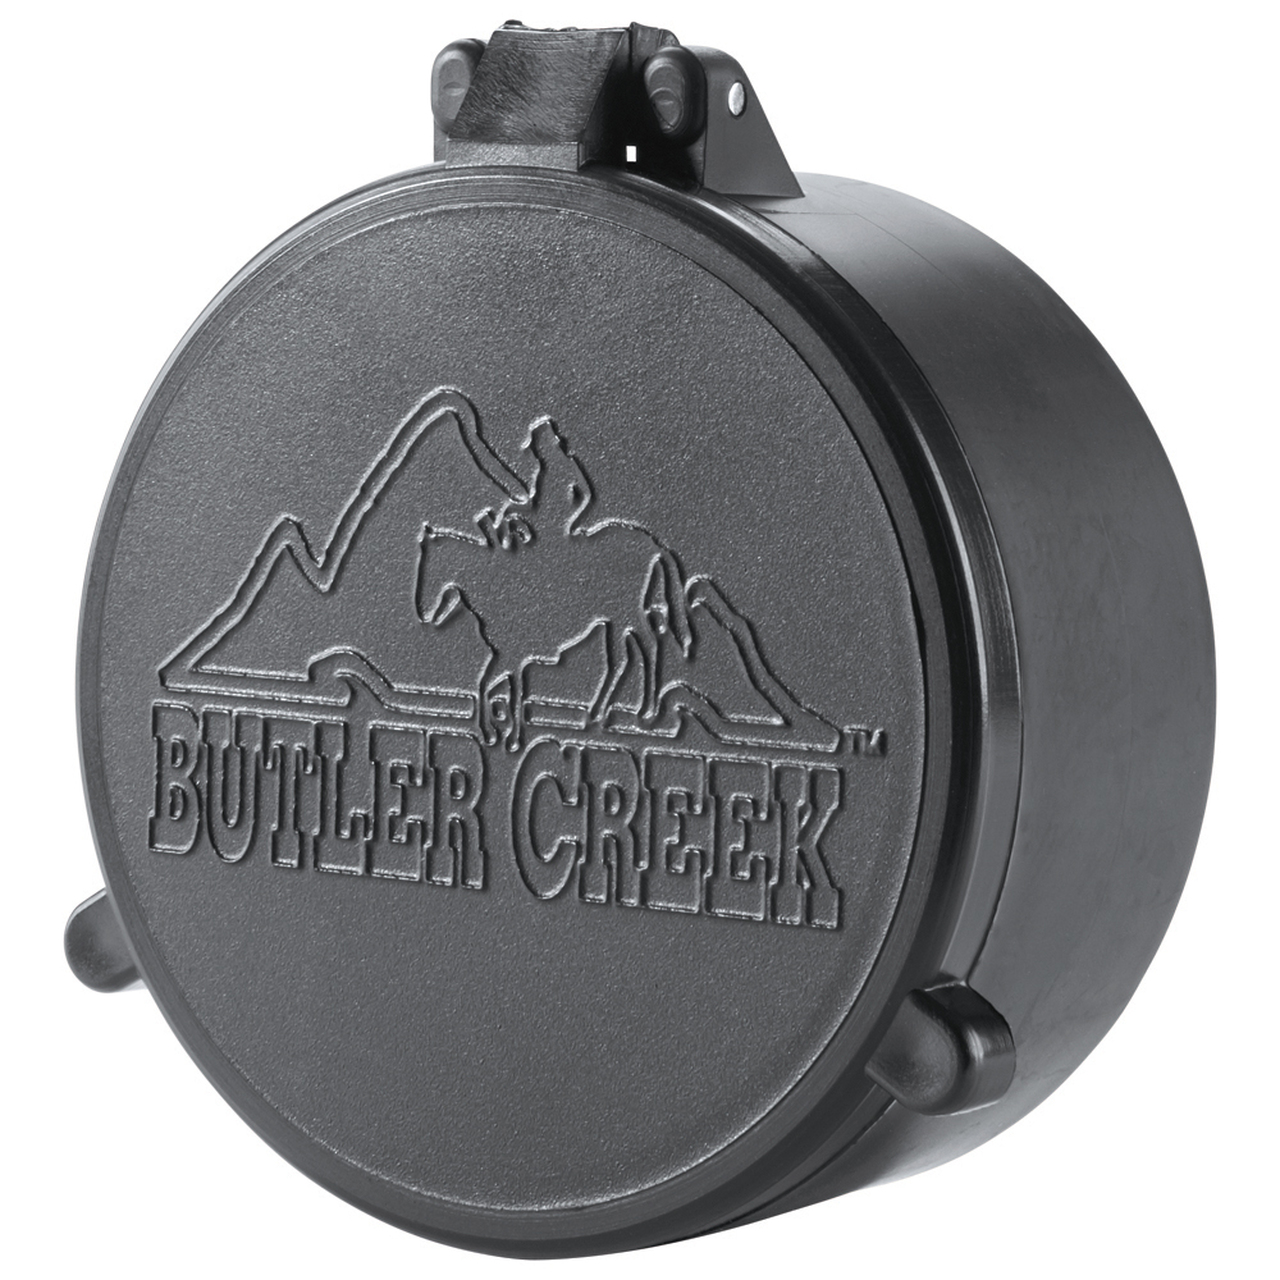 Butler Creek 33334 Multi-Flex Flip-Open Scope Cover Objective Lens 51.90-53.50mm Slip On Polymer Black